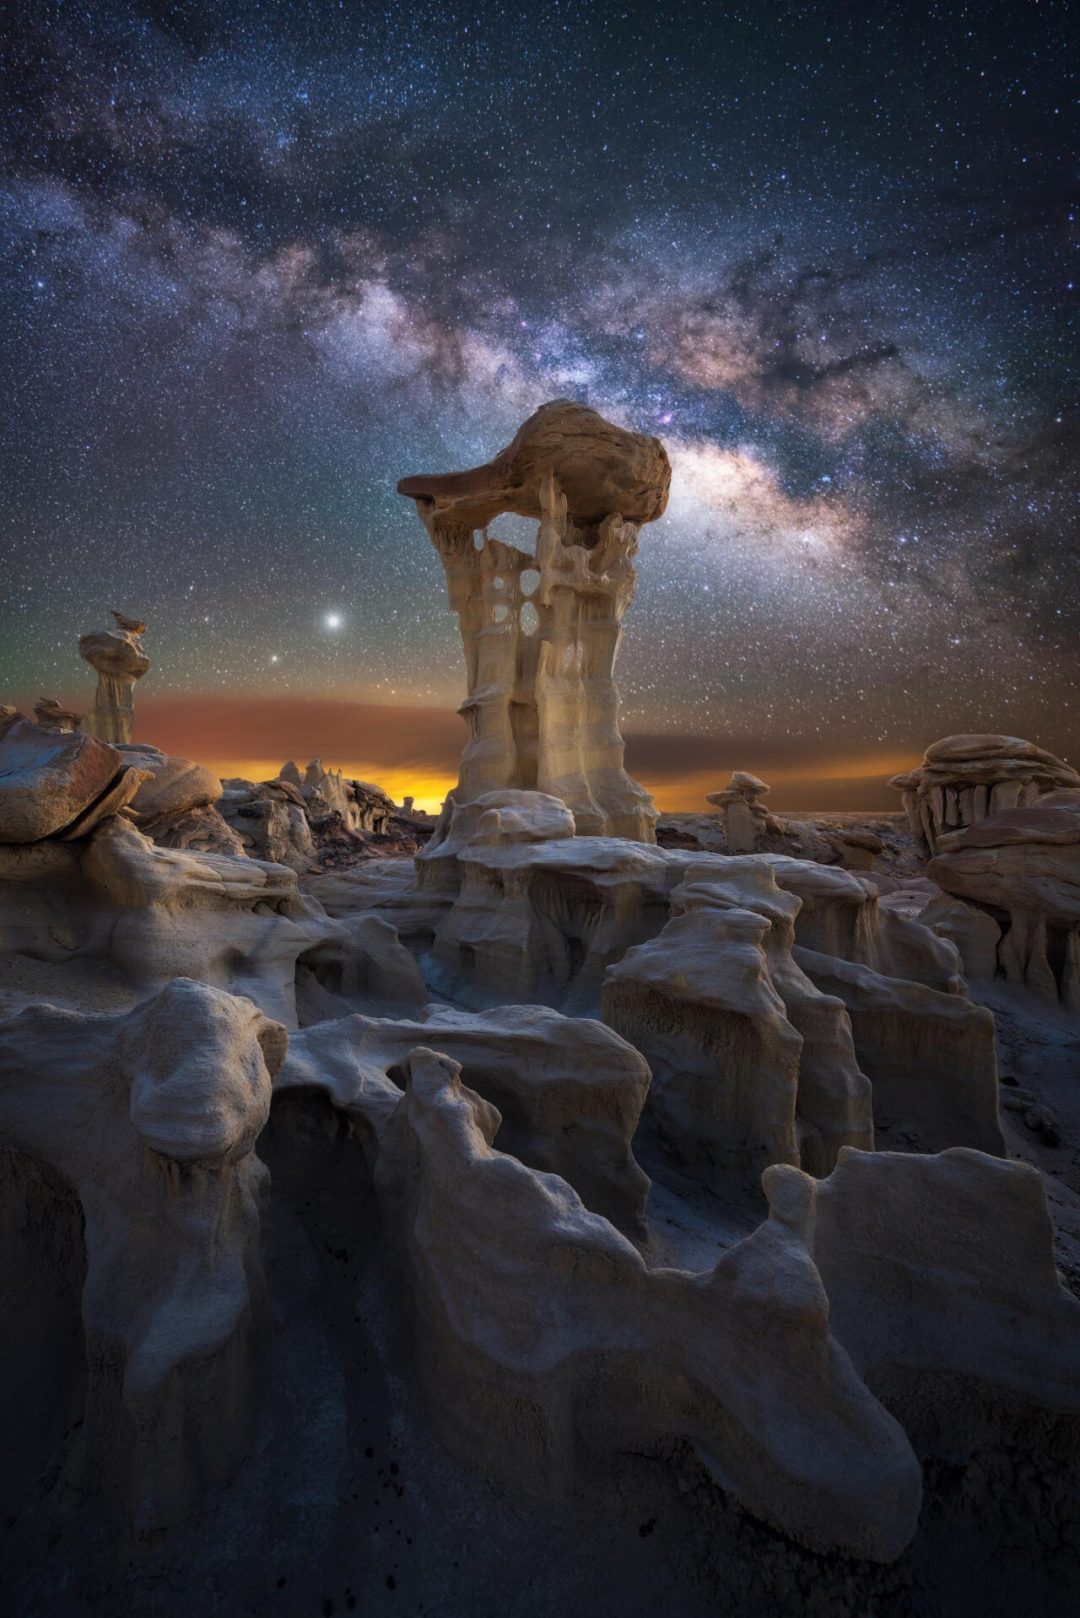 La bellezza dell’universo in una foto: i finalisti dell’Astronomy Photographer of the Year 2021